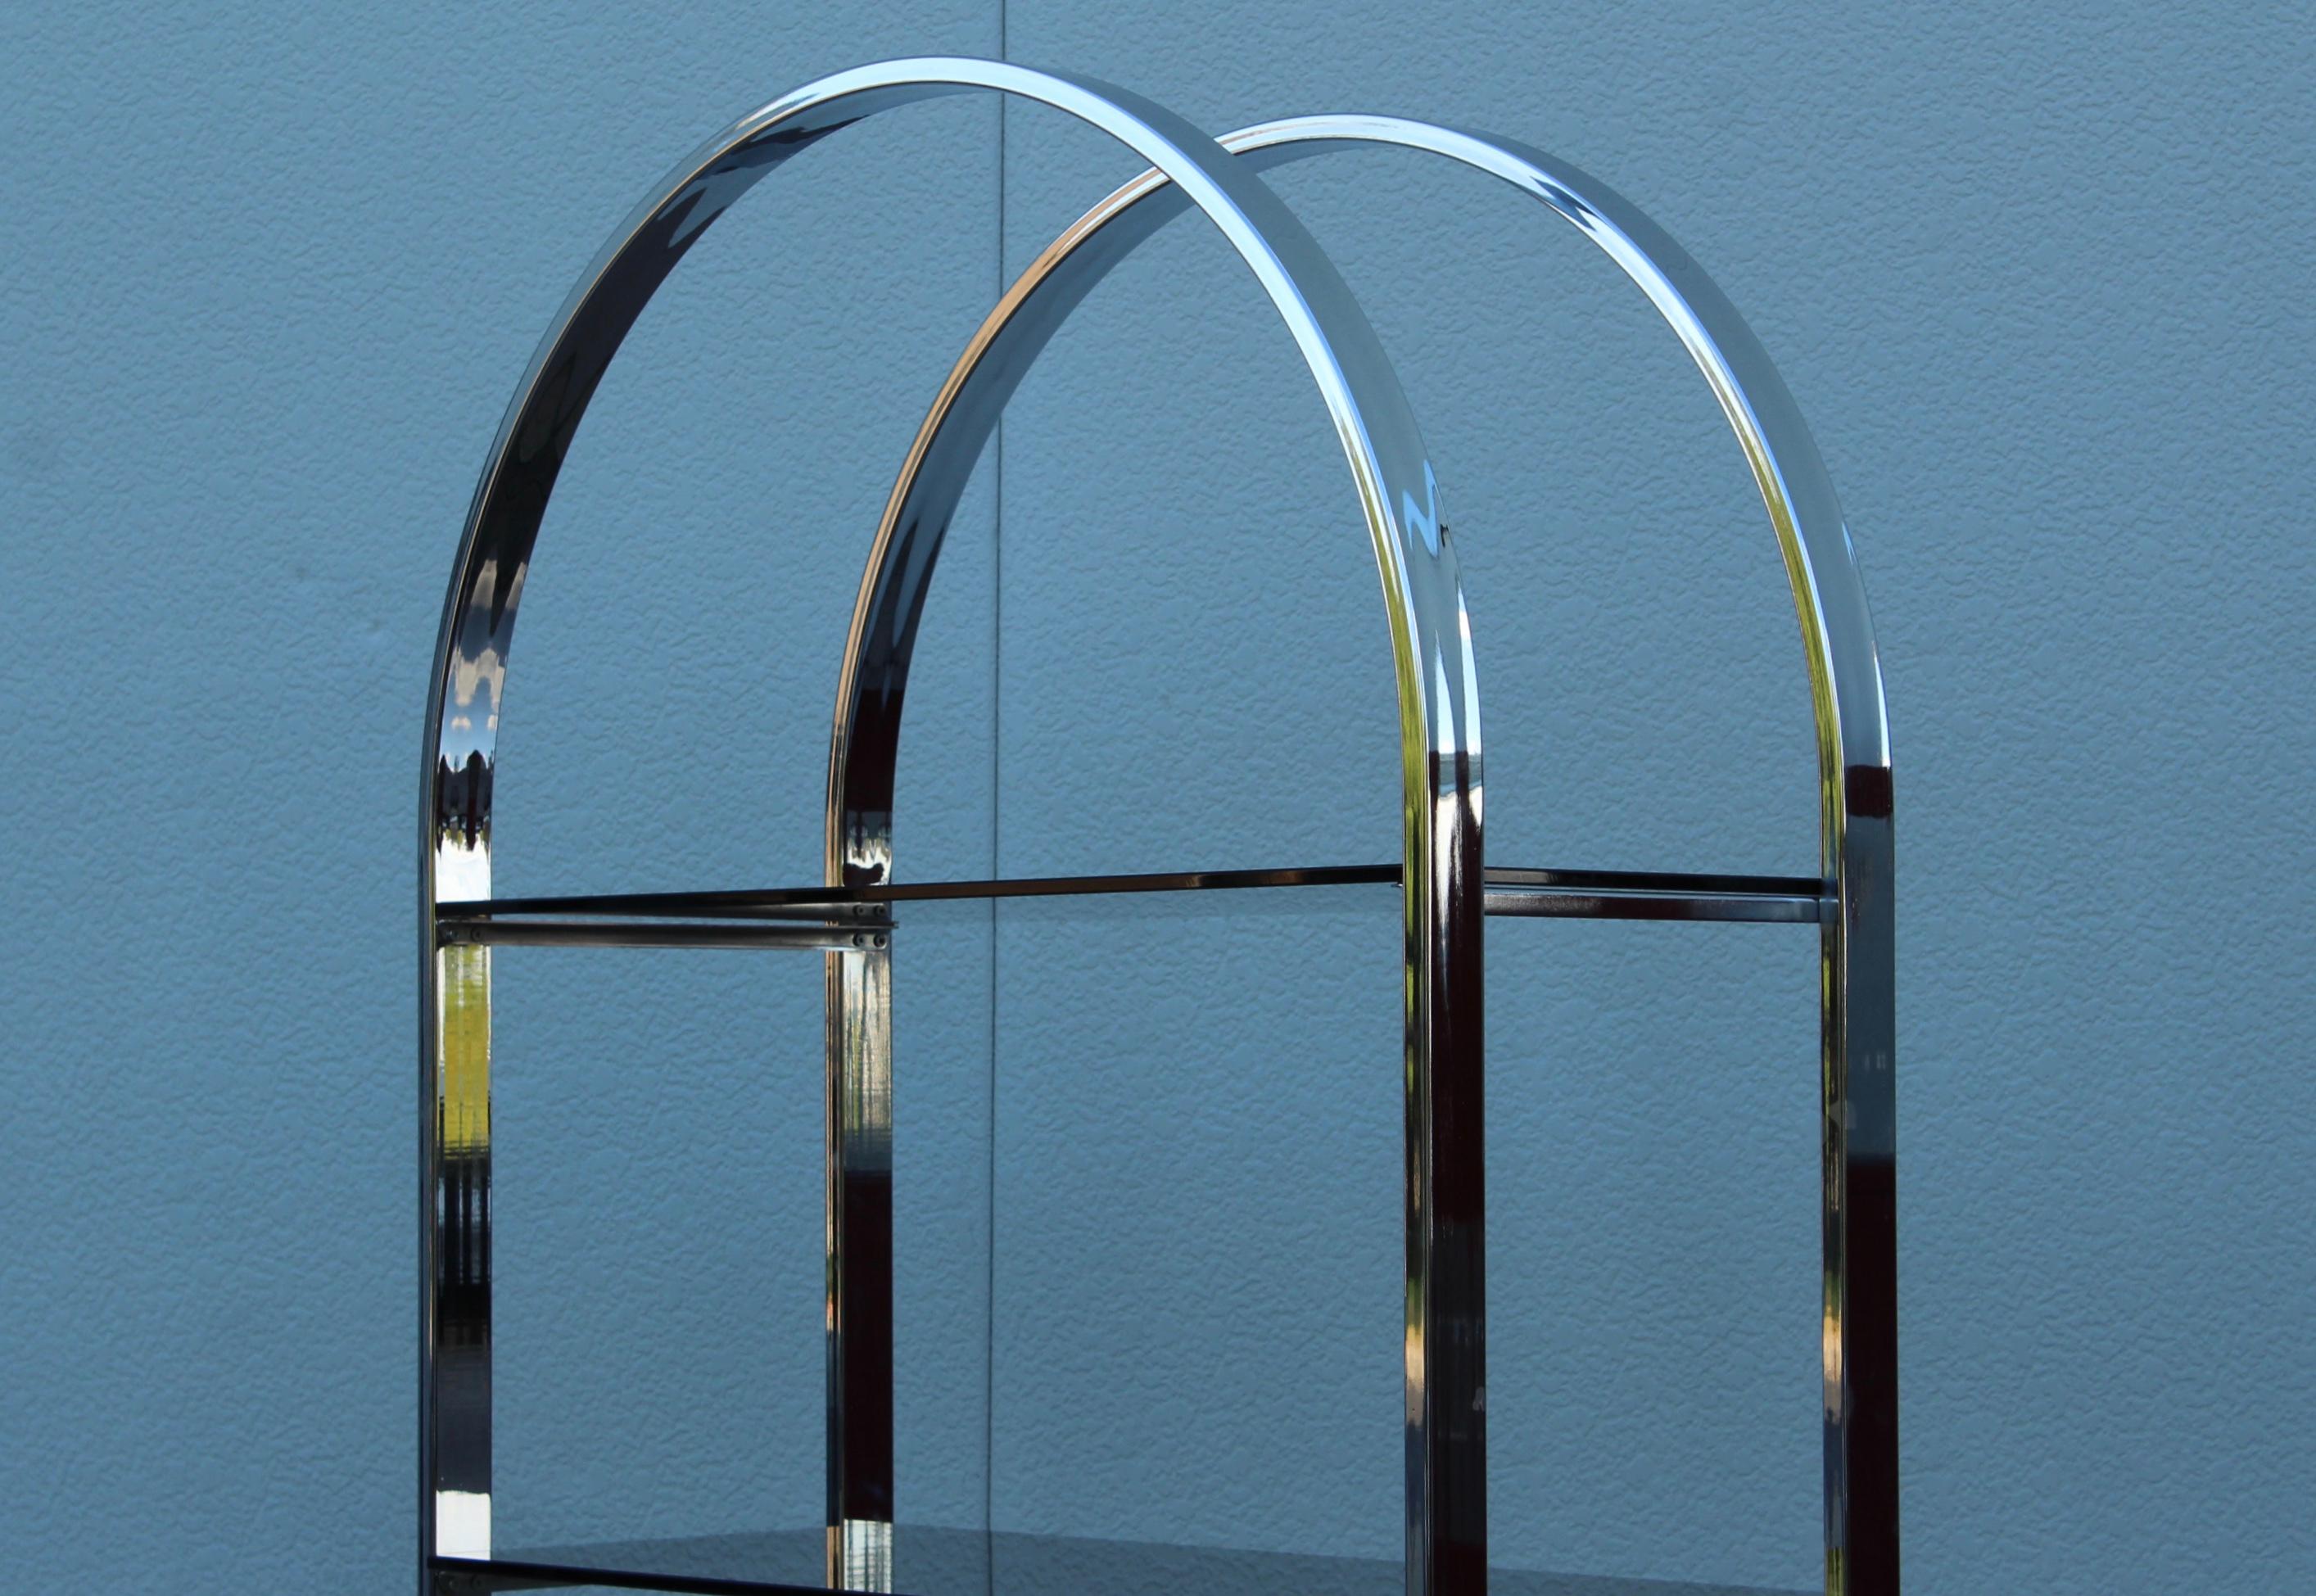 1970's Mid-Century Modern Chrom mit 4 Glasböden Bogen Etagere, In Vintage-Zustand mit geringem Verschleiß und Patina auf dem Chrom aufgrund von Alter und Gebrauch.